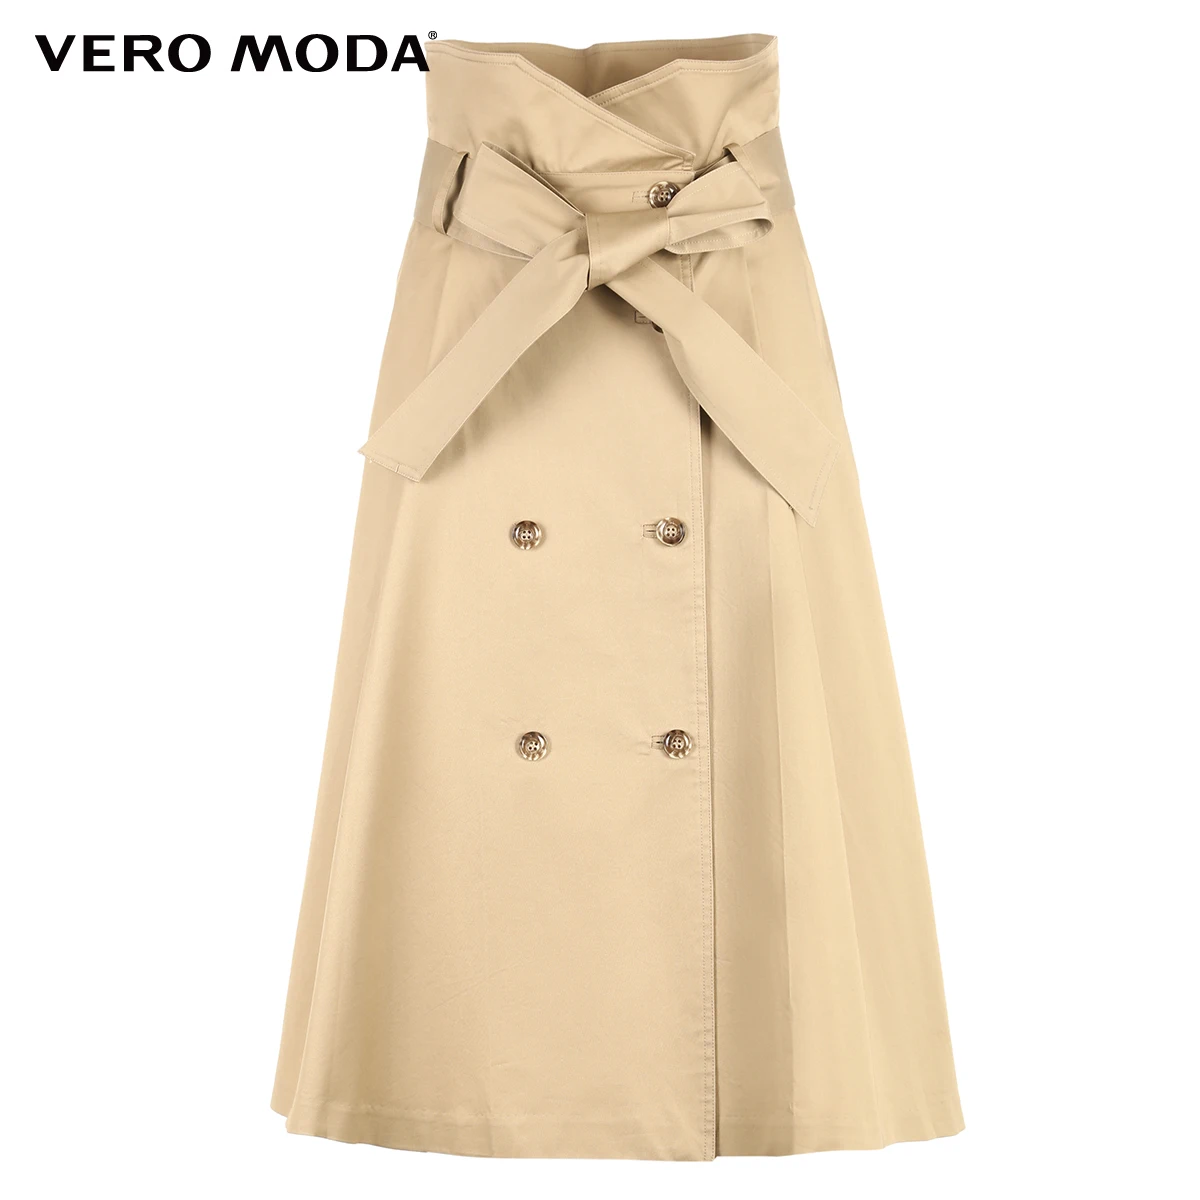 Vero Moda женский уличный стиль двубортная юбка с высокой посадкой | 319116554